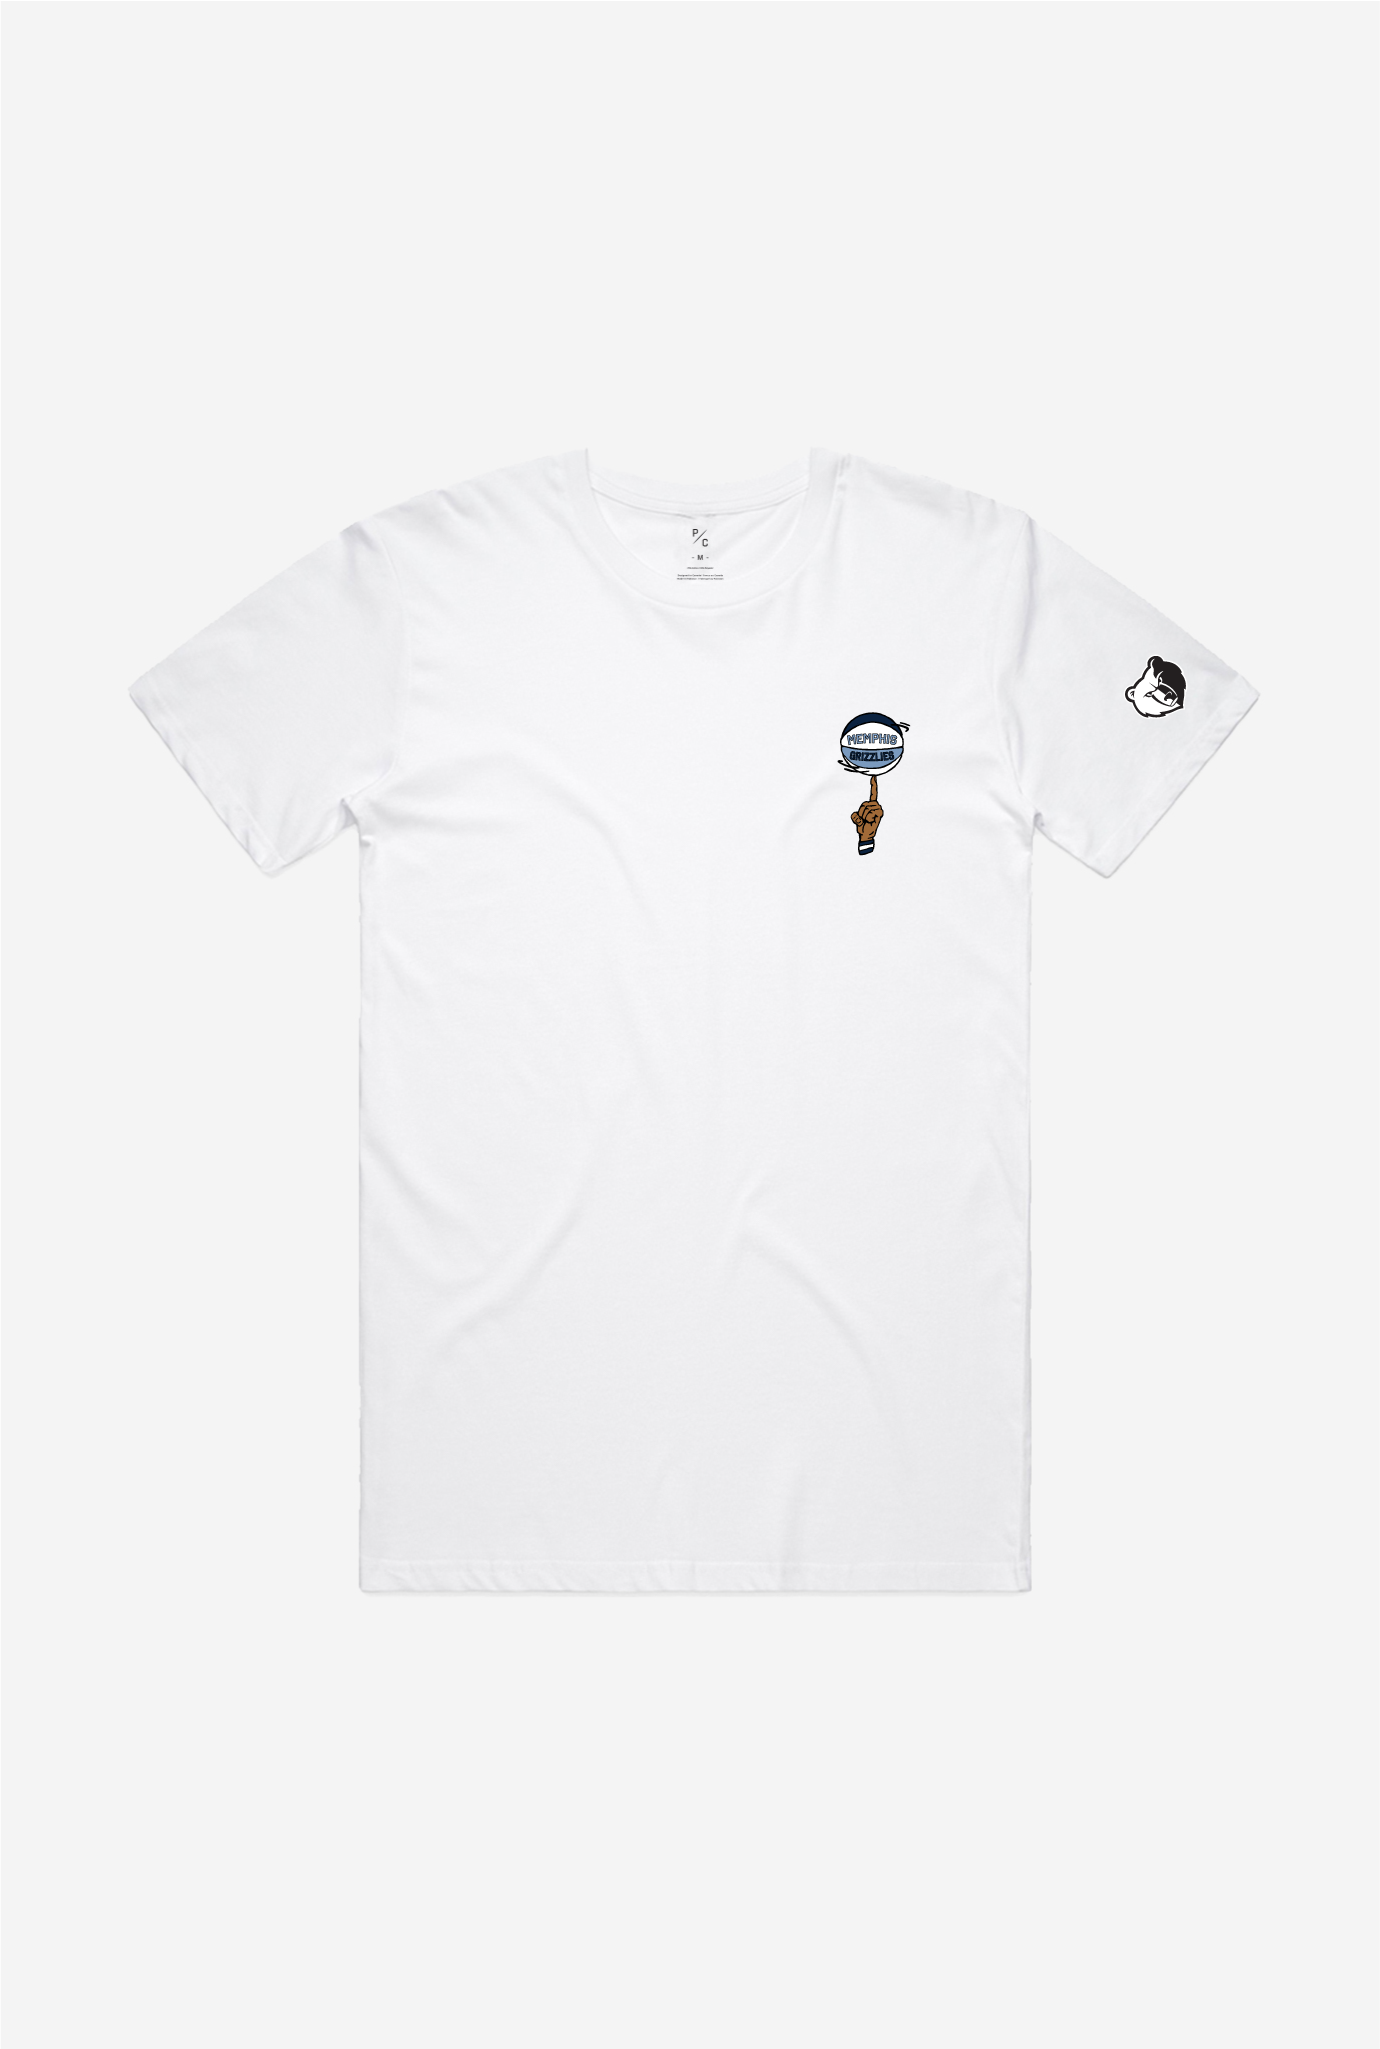 Memphis Grizzlies Spinning Ball T-Shirt - White